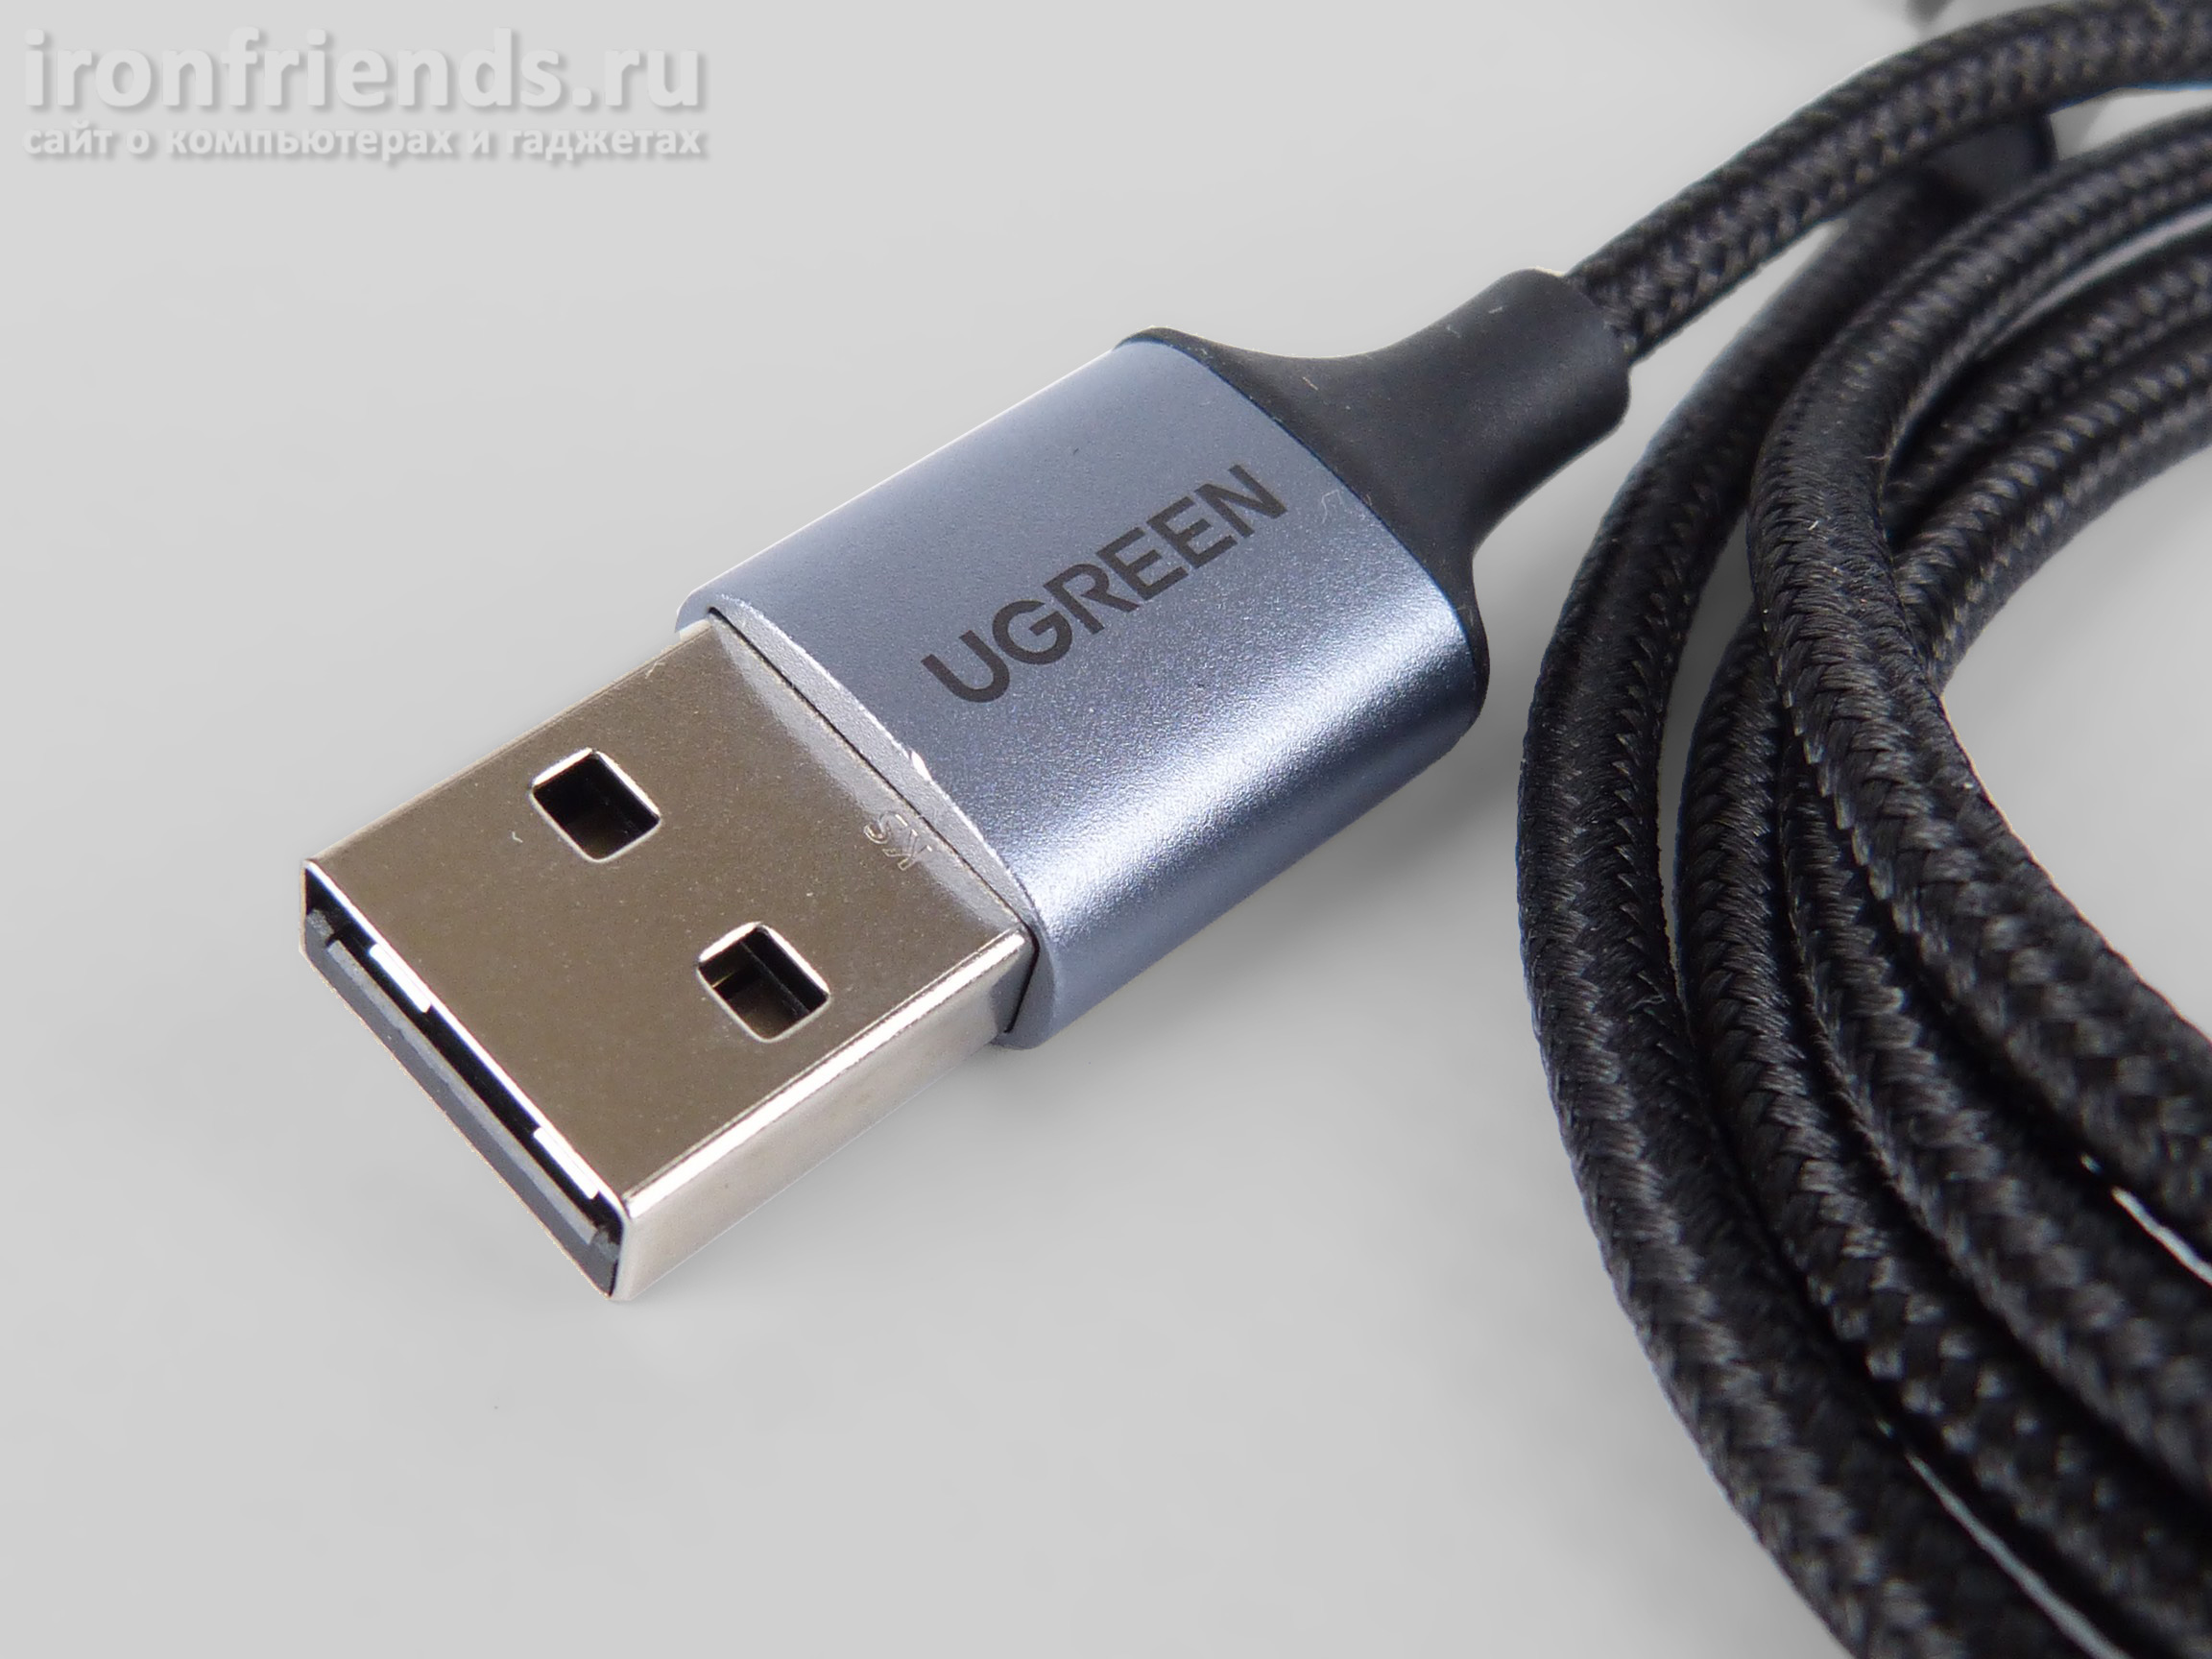 Разъем USB кабеля Ugreen с круглым коннектором